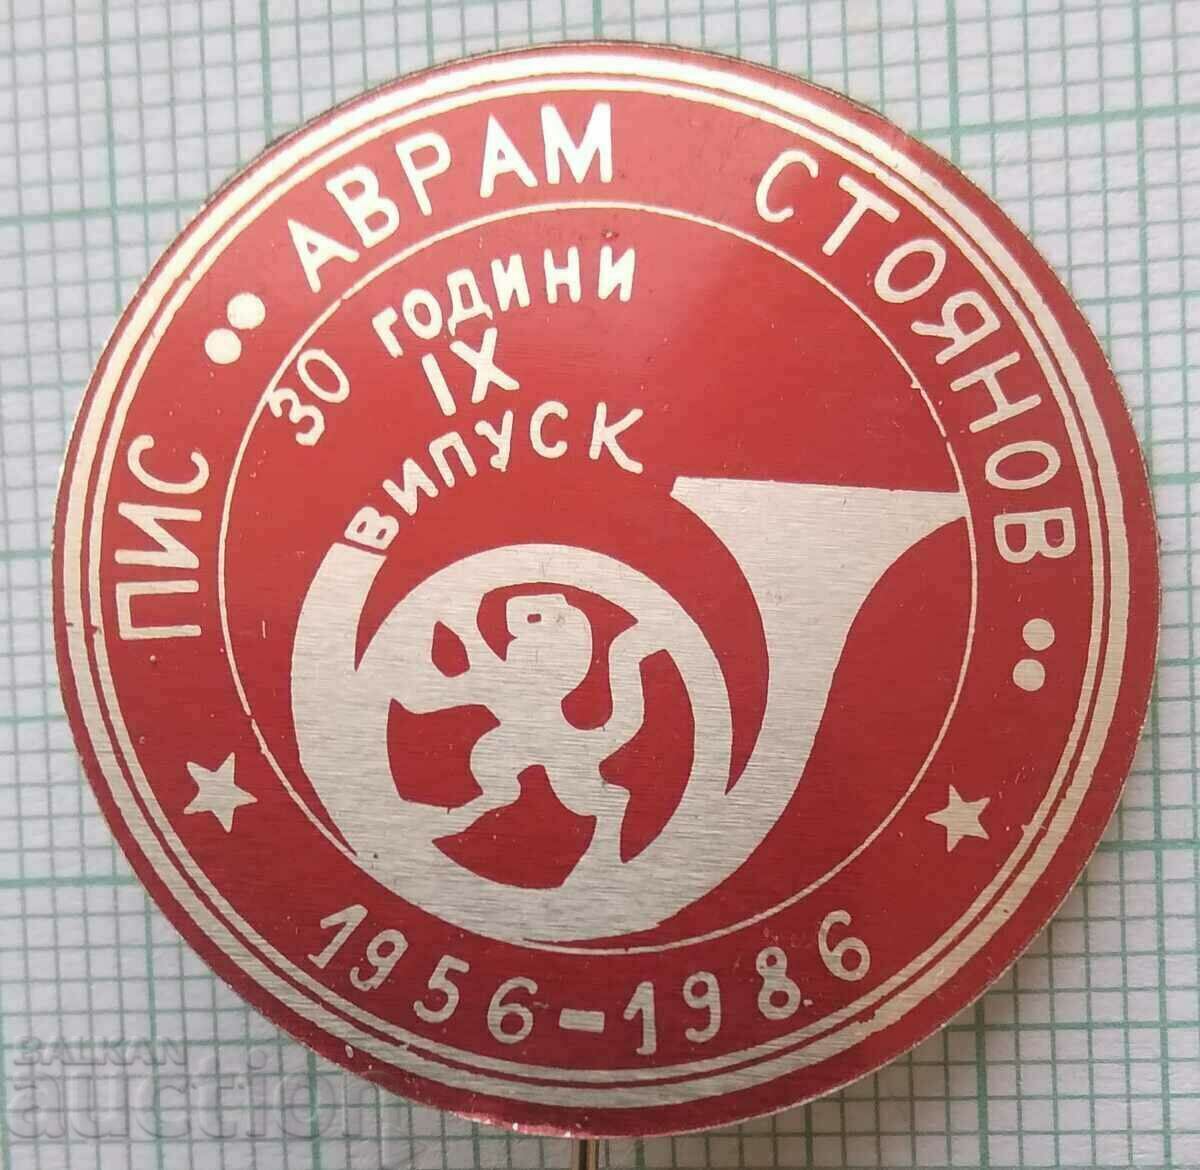 14466 Ημι-ανώτερο Ινστιτούτο Κοιν. Avram Stoyanov - 30 χρόνια PIS